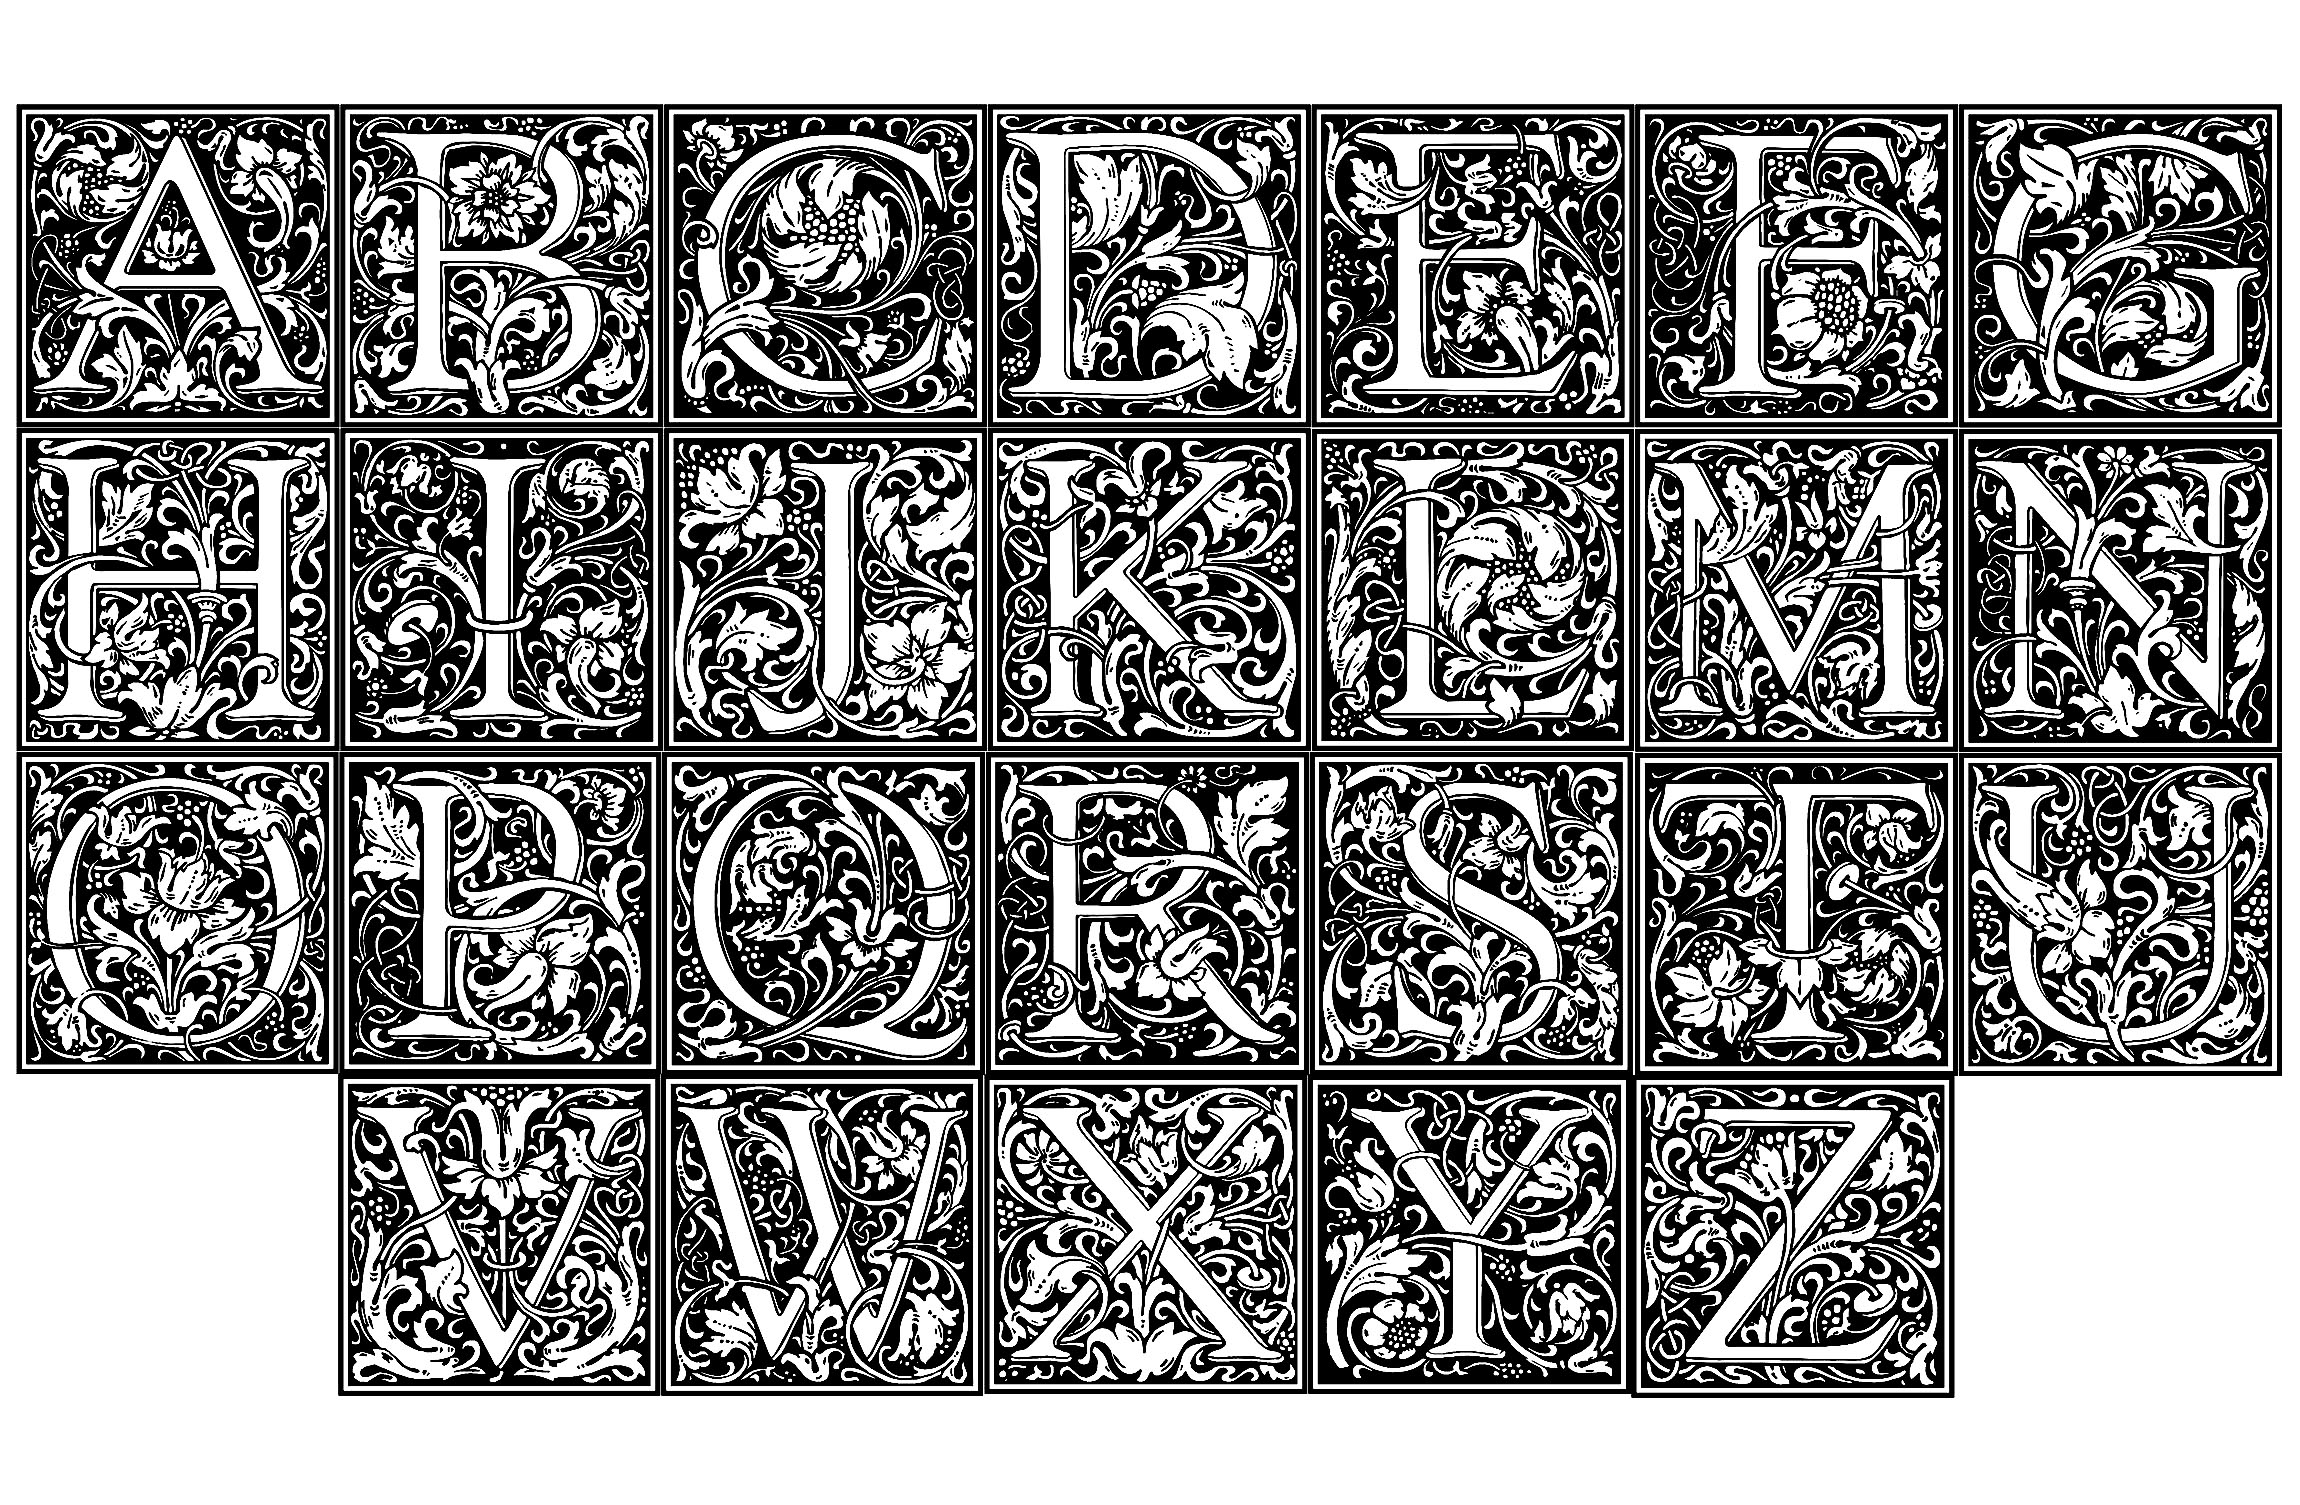 Lettres d'Alphabet créées par William Morris, dans le pur style du mouvement Arts and Craft